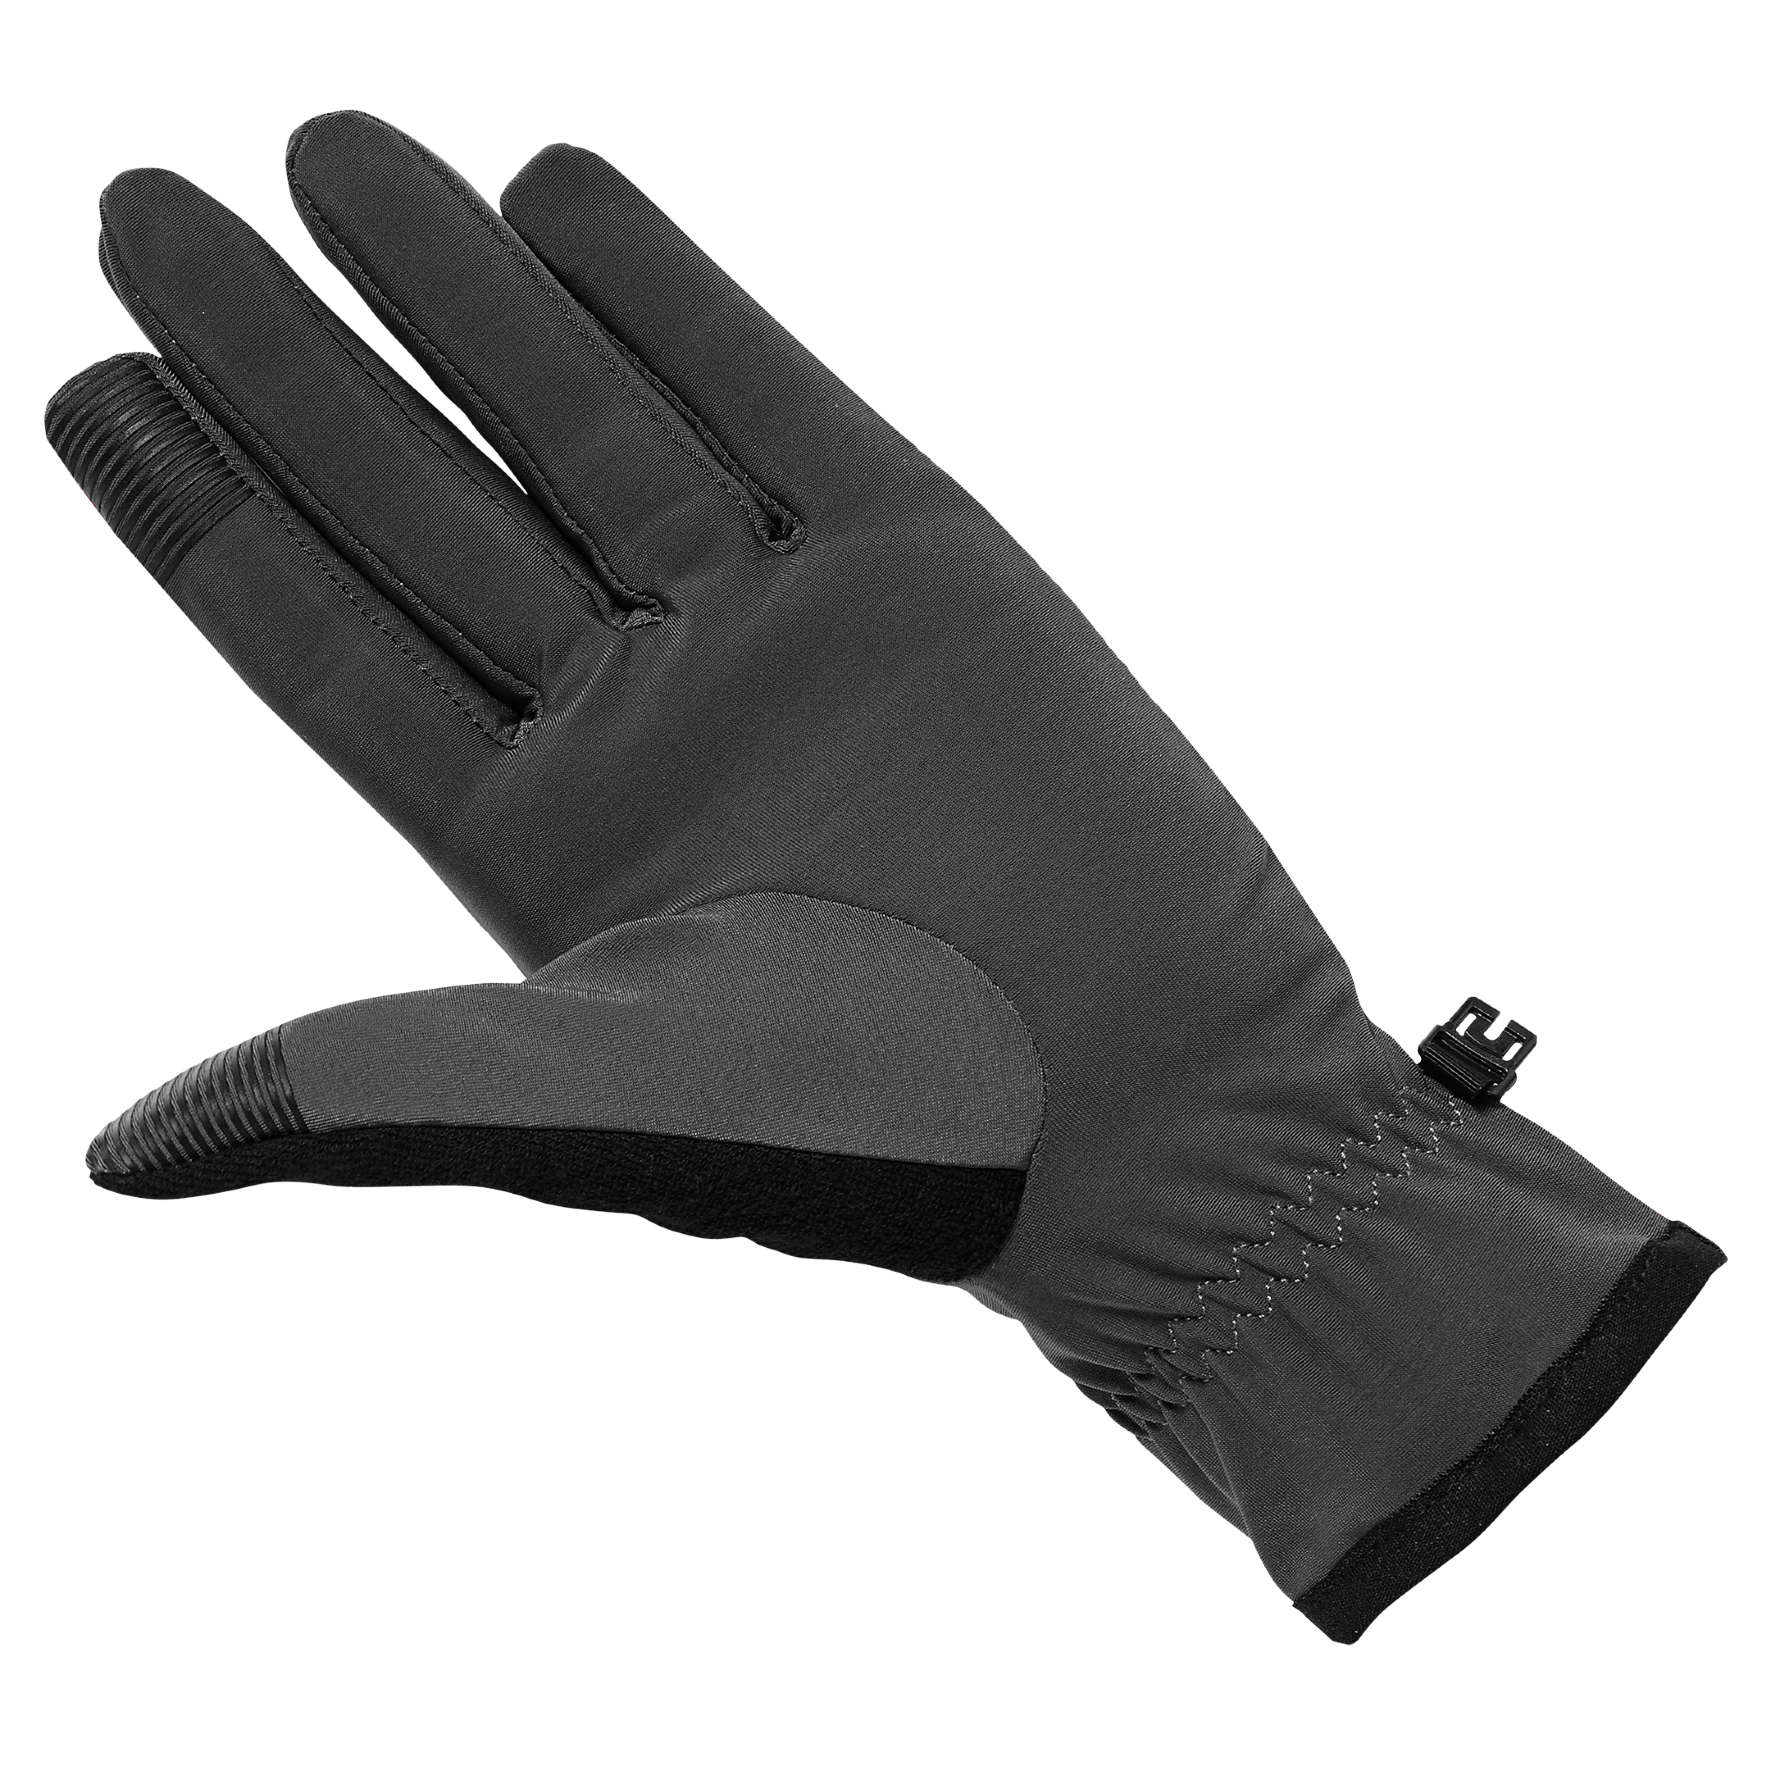 ASICS Winter Performance Hardloop Handschoenen Roze/Zwart Unisex